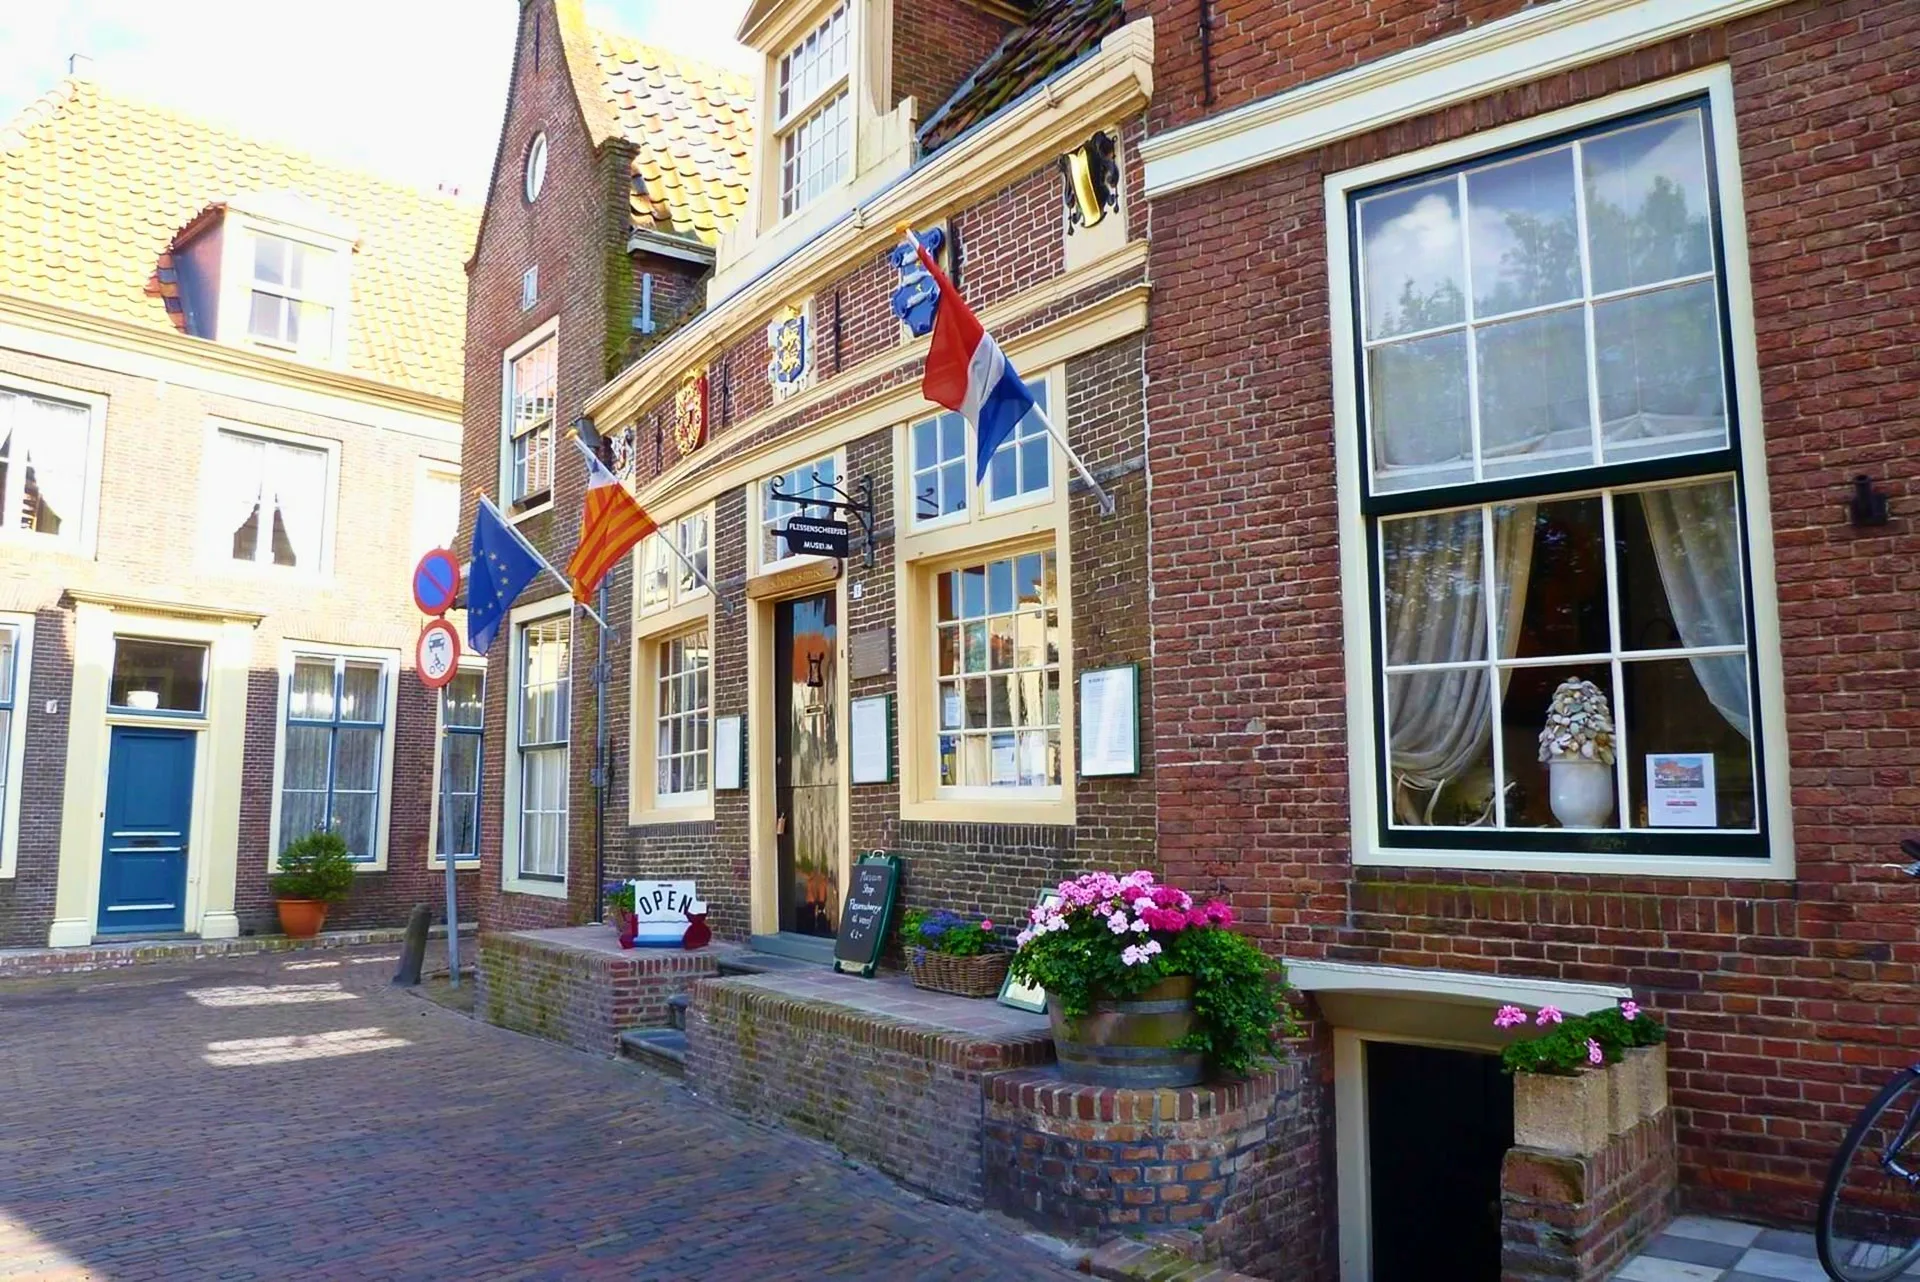 Το μουσείο Zuiderzee στο Enkhuizen της Ολλανδίας - Μουσείο Εμφιαλώσεως, Bottle ship museum